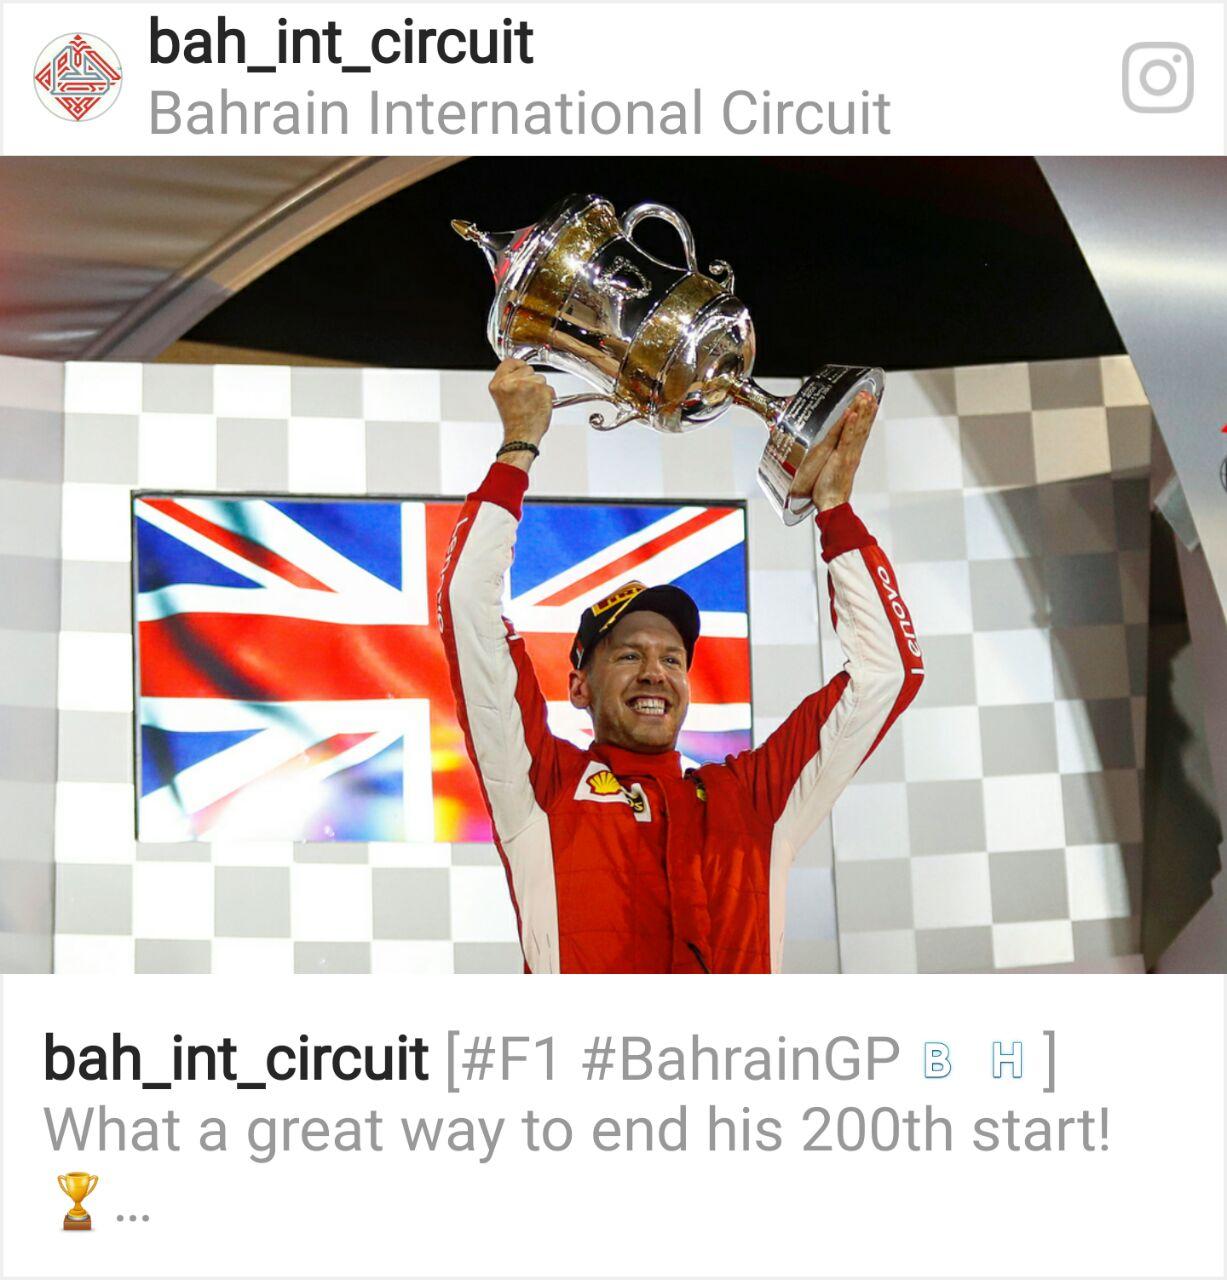 الألماني فيتيل يخطف فوزه الثاني لهذا الموسم بجائزة البحرين الكبري (2018)